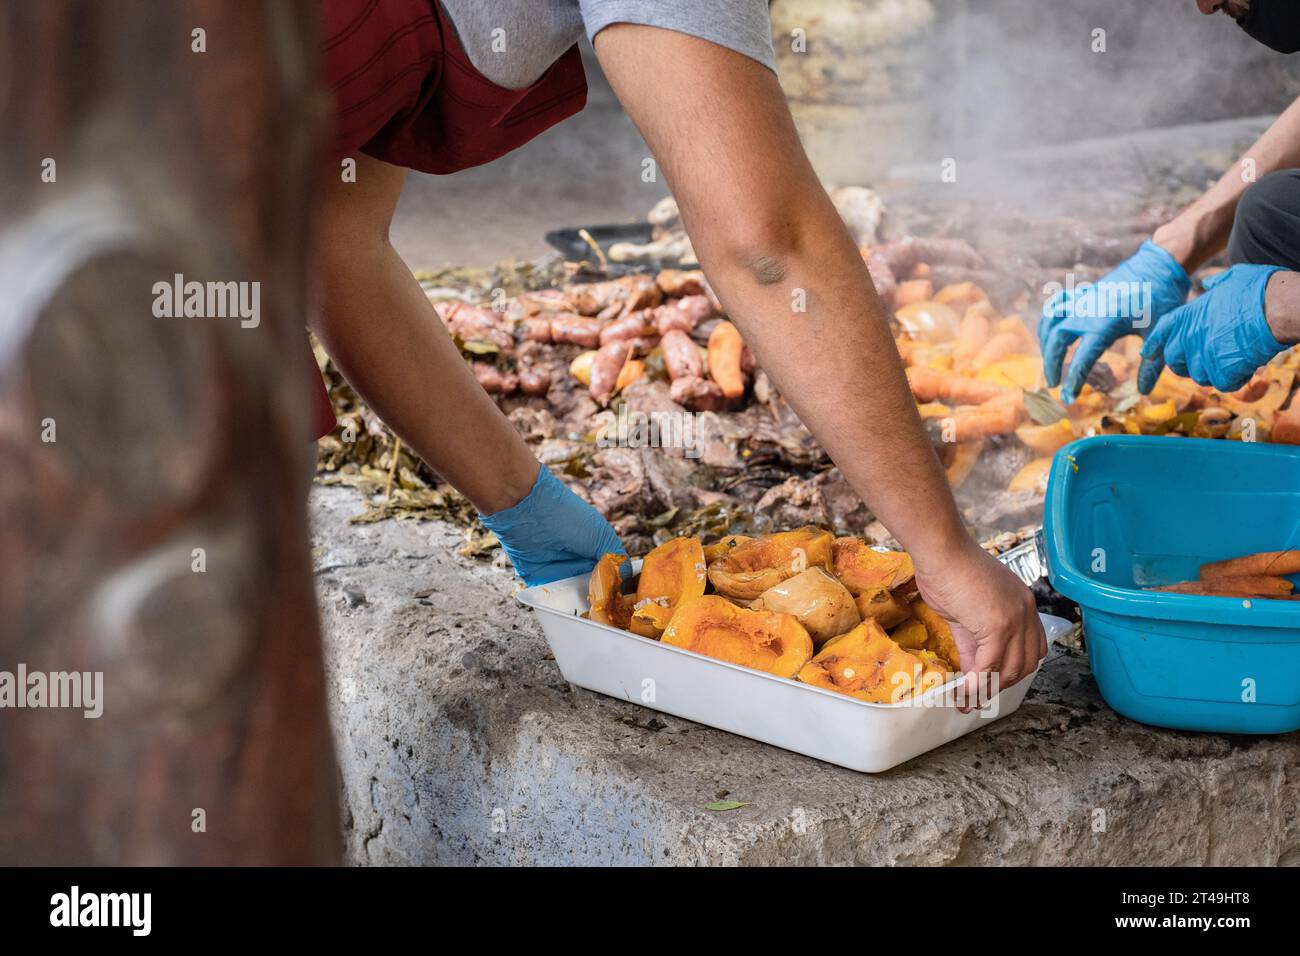 Un cuoco tiene un vassoio bianco con pezzi di zucca preparati sottoterra come parte della cerimonia del curanto, un cibo tradizionale della Patagonia. Colonia Suiza, Foto Stock